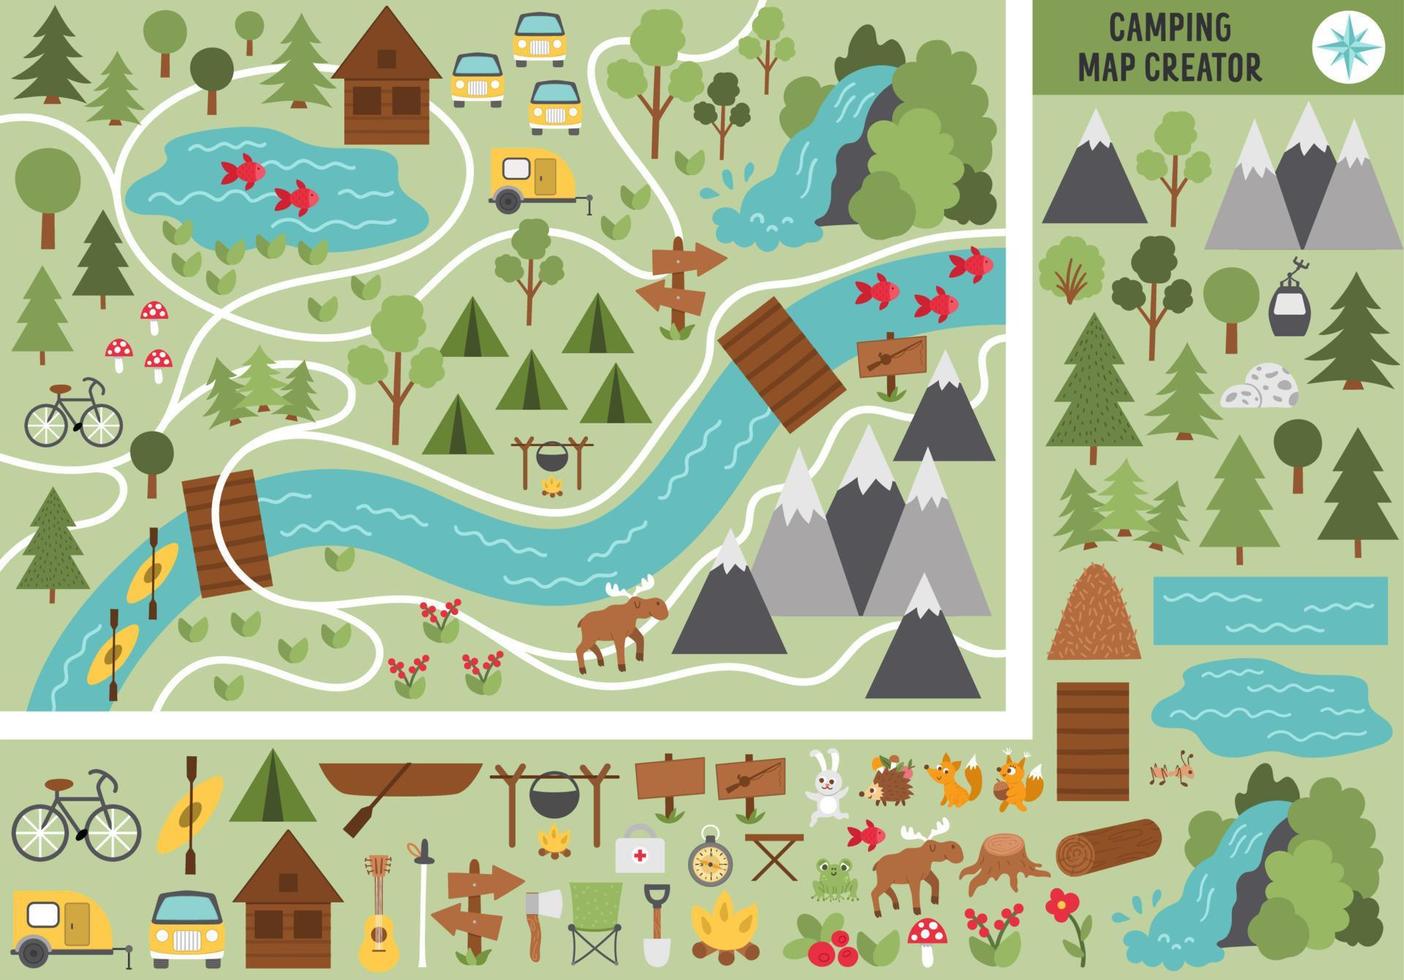 campingkarta skapare. uppsättning platta tecknade element för att bygga sommarläger aktivitet. vektor natur clipart med berg, vattenfall, träd, skogsdjur för vandring eller lägereld plan.